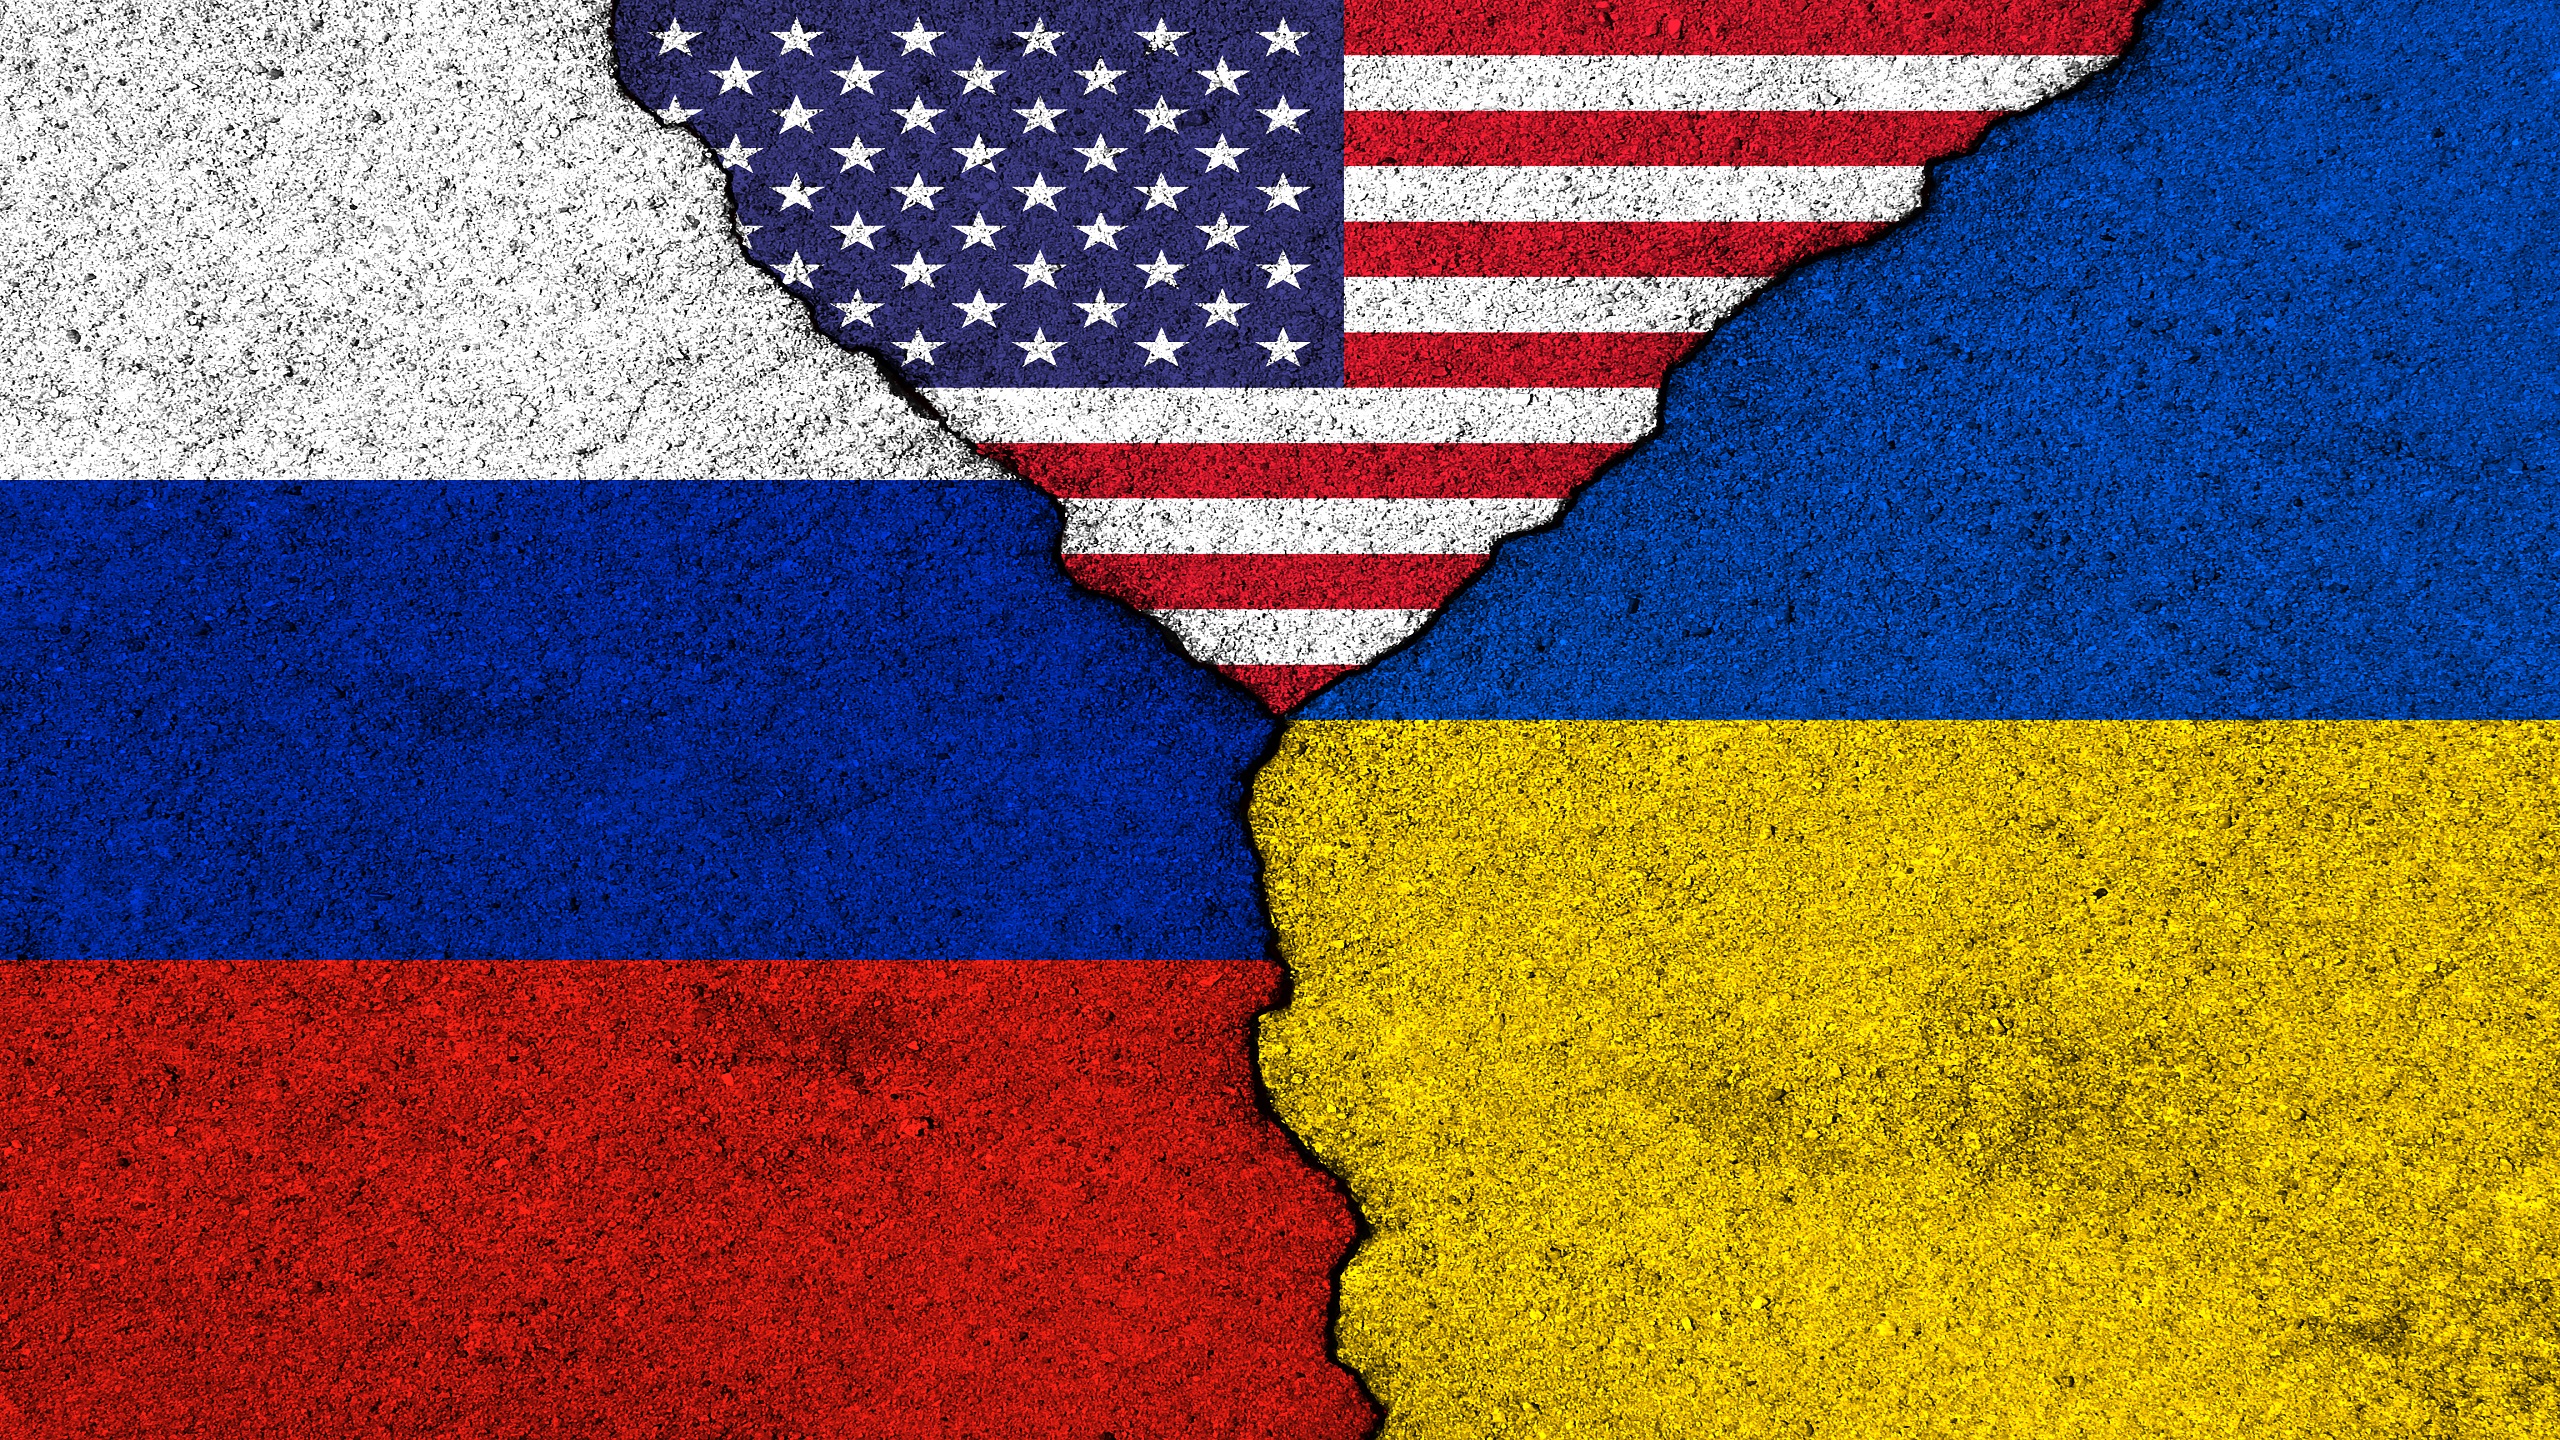 Moskau: Die diplomatischen Beziehungen zu den Vereinigten Staaten knnten beendet werden